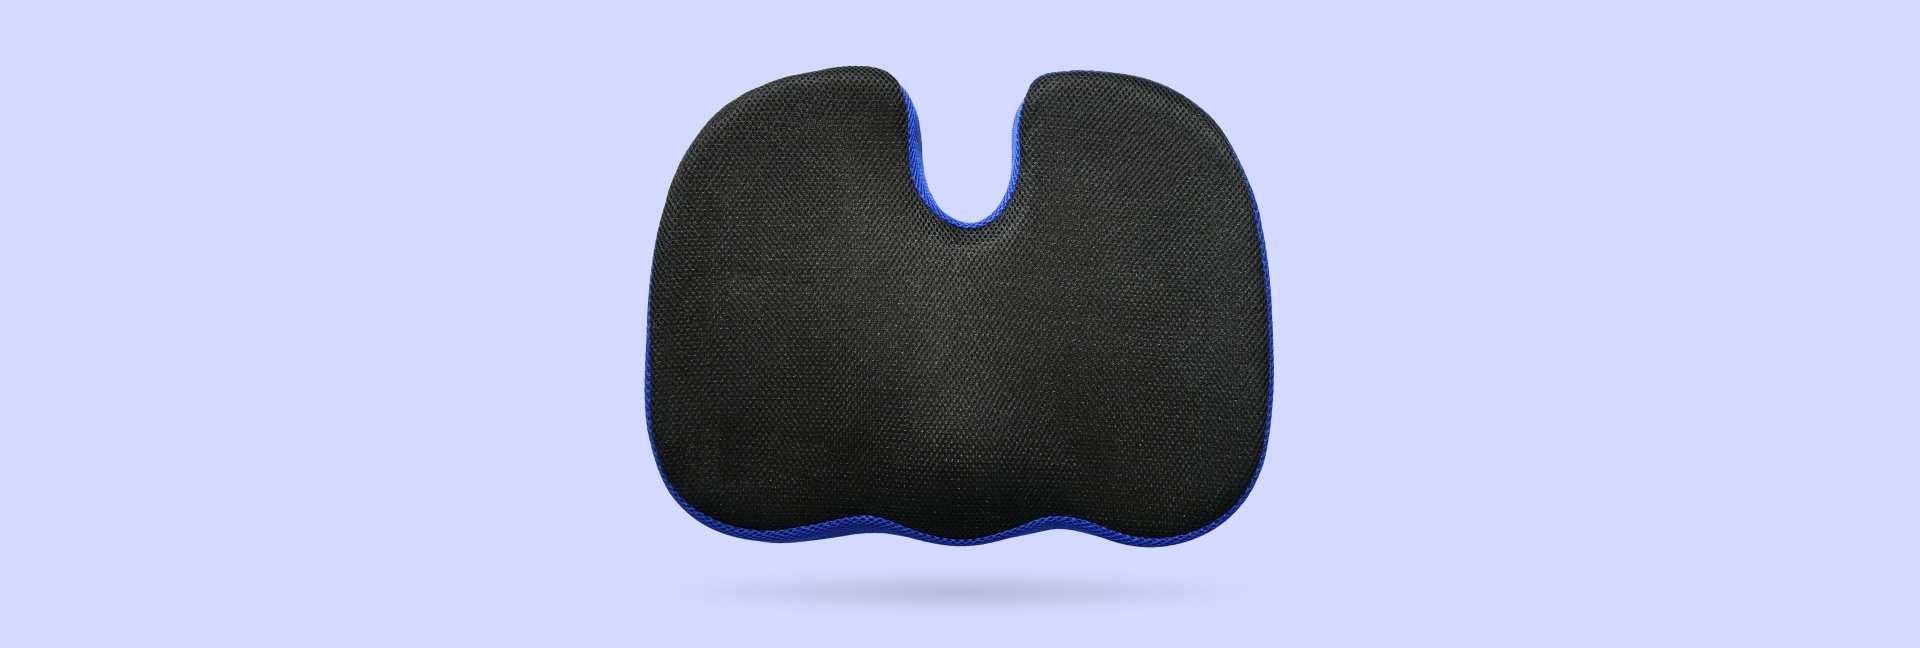 подушка для сидения blue sleep